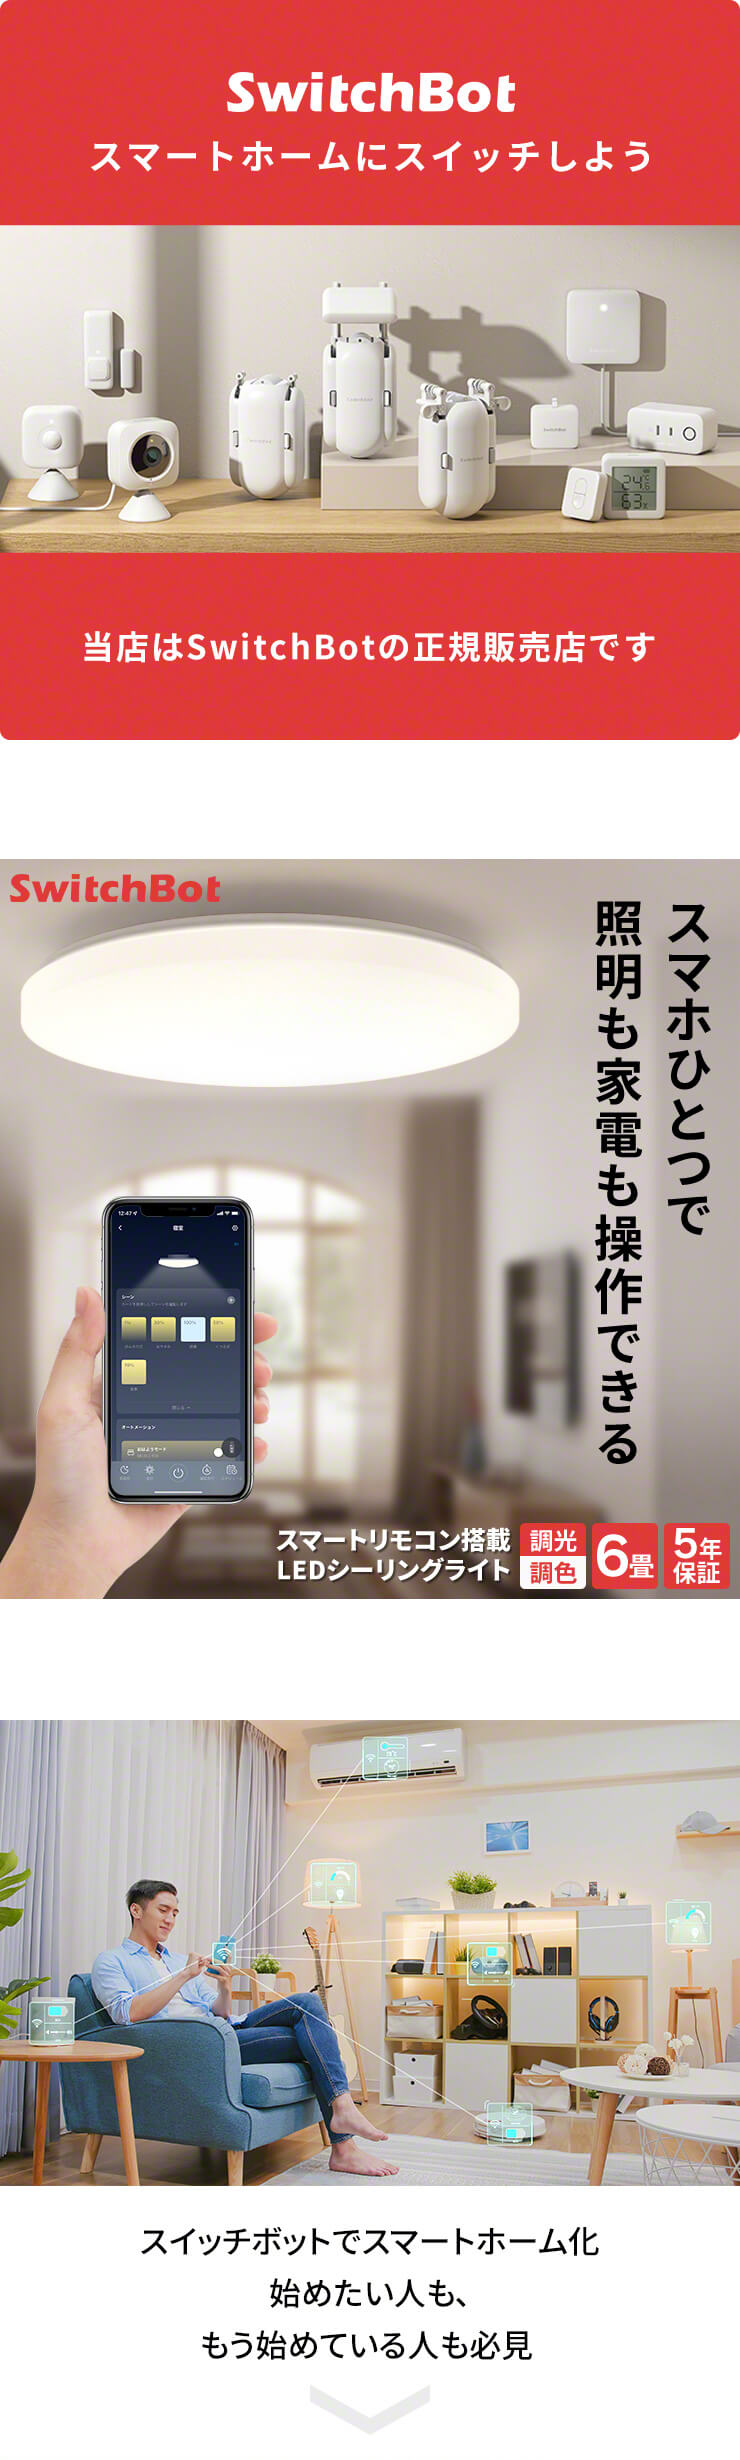 スマートホーム化するための拠点となるHub機能を兼ね備えたLEDシーリングライトスマホひとつで照明も家電も操作 